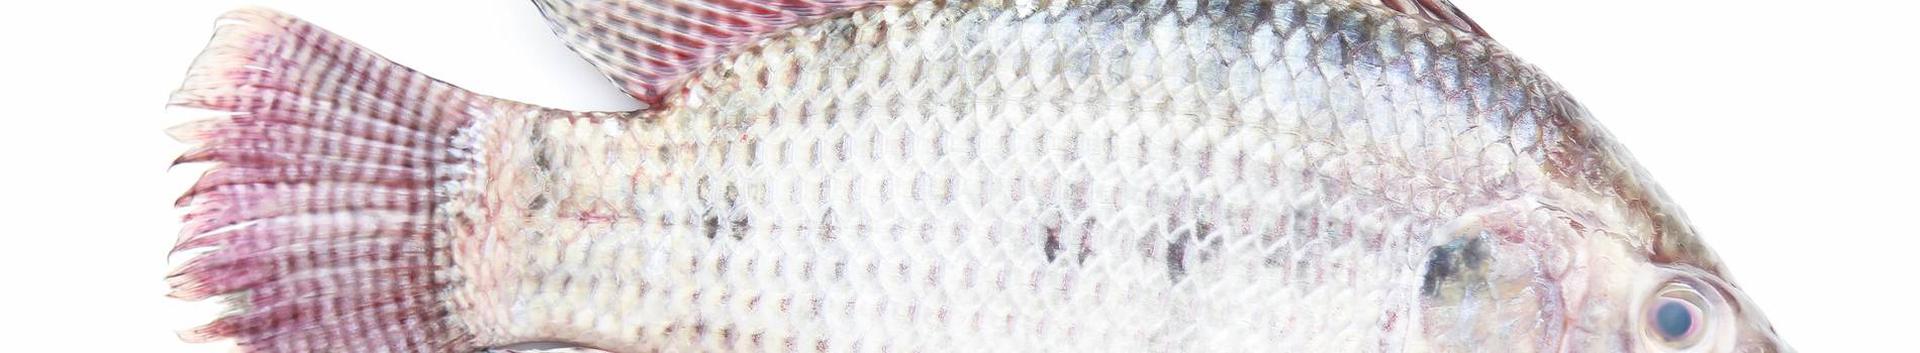 OÜ Kaiavere Kalurikolhoos kalapüügiga tegelev ettevõte, mis omab ajaloolisi püügiõiguseid Kaiavere järvele. See järv on kalarikas ja sinna asustatakse ...